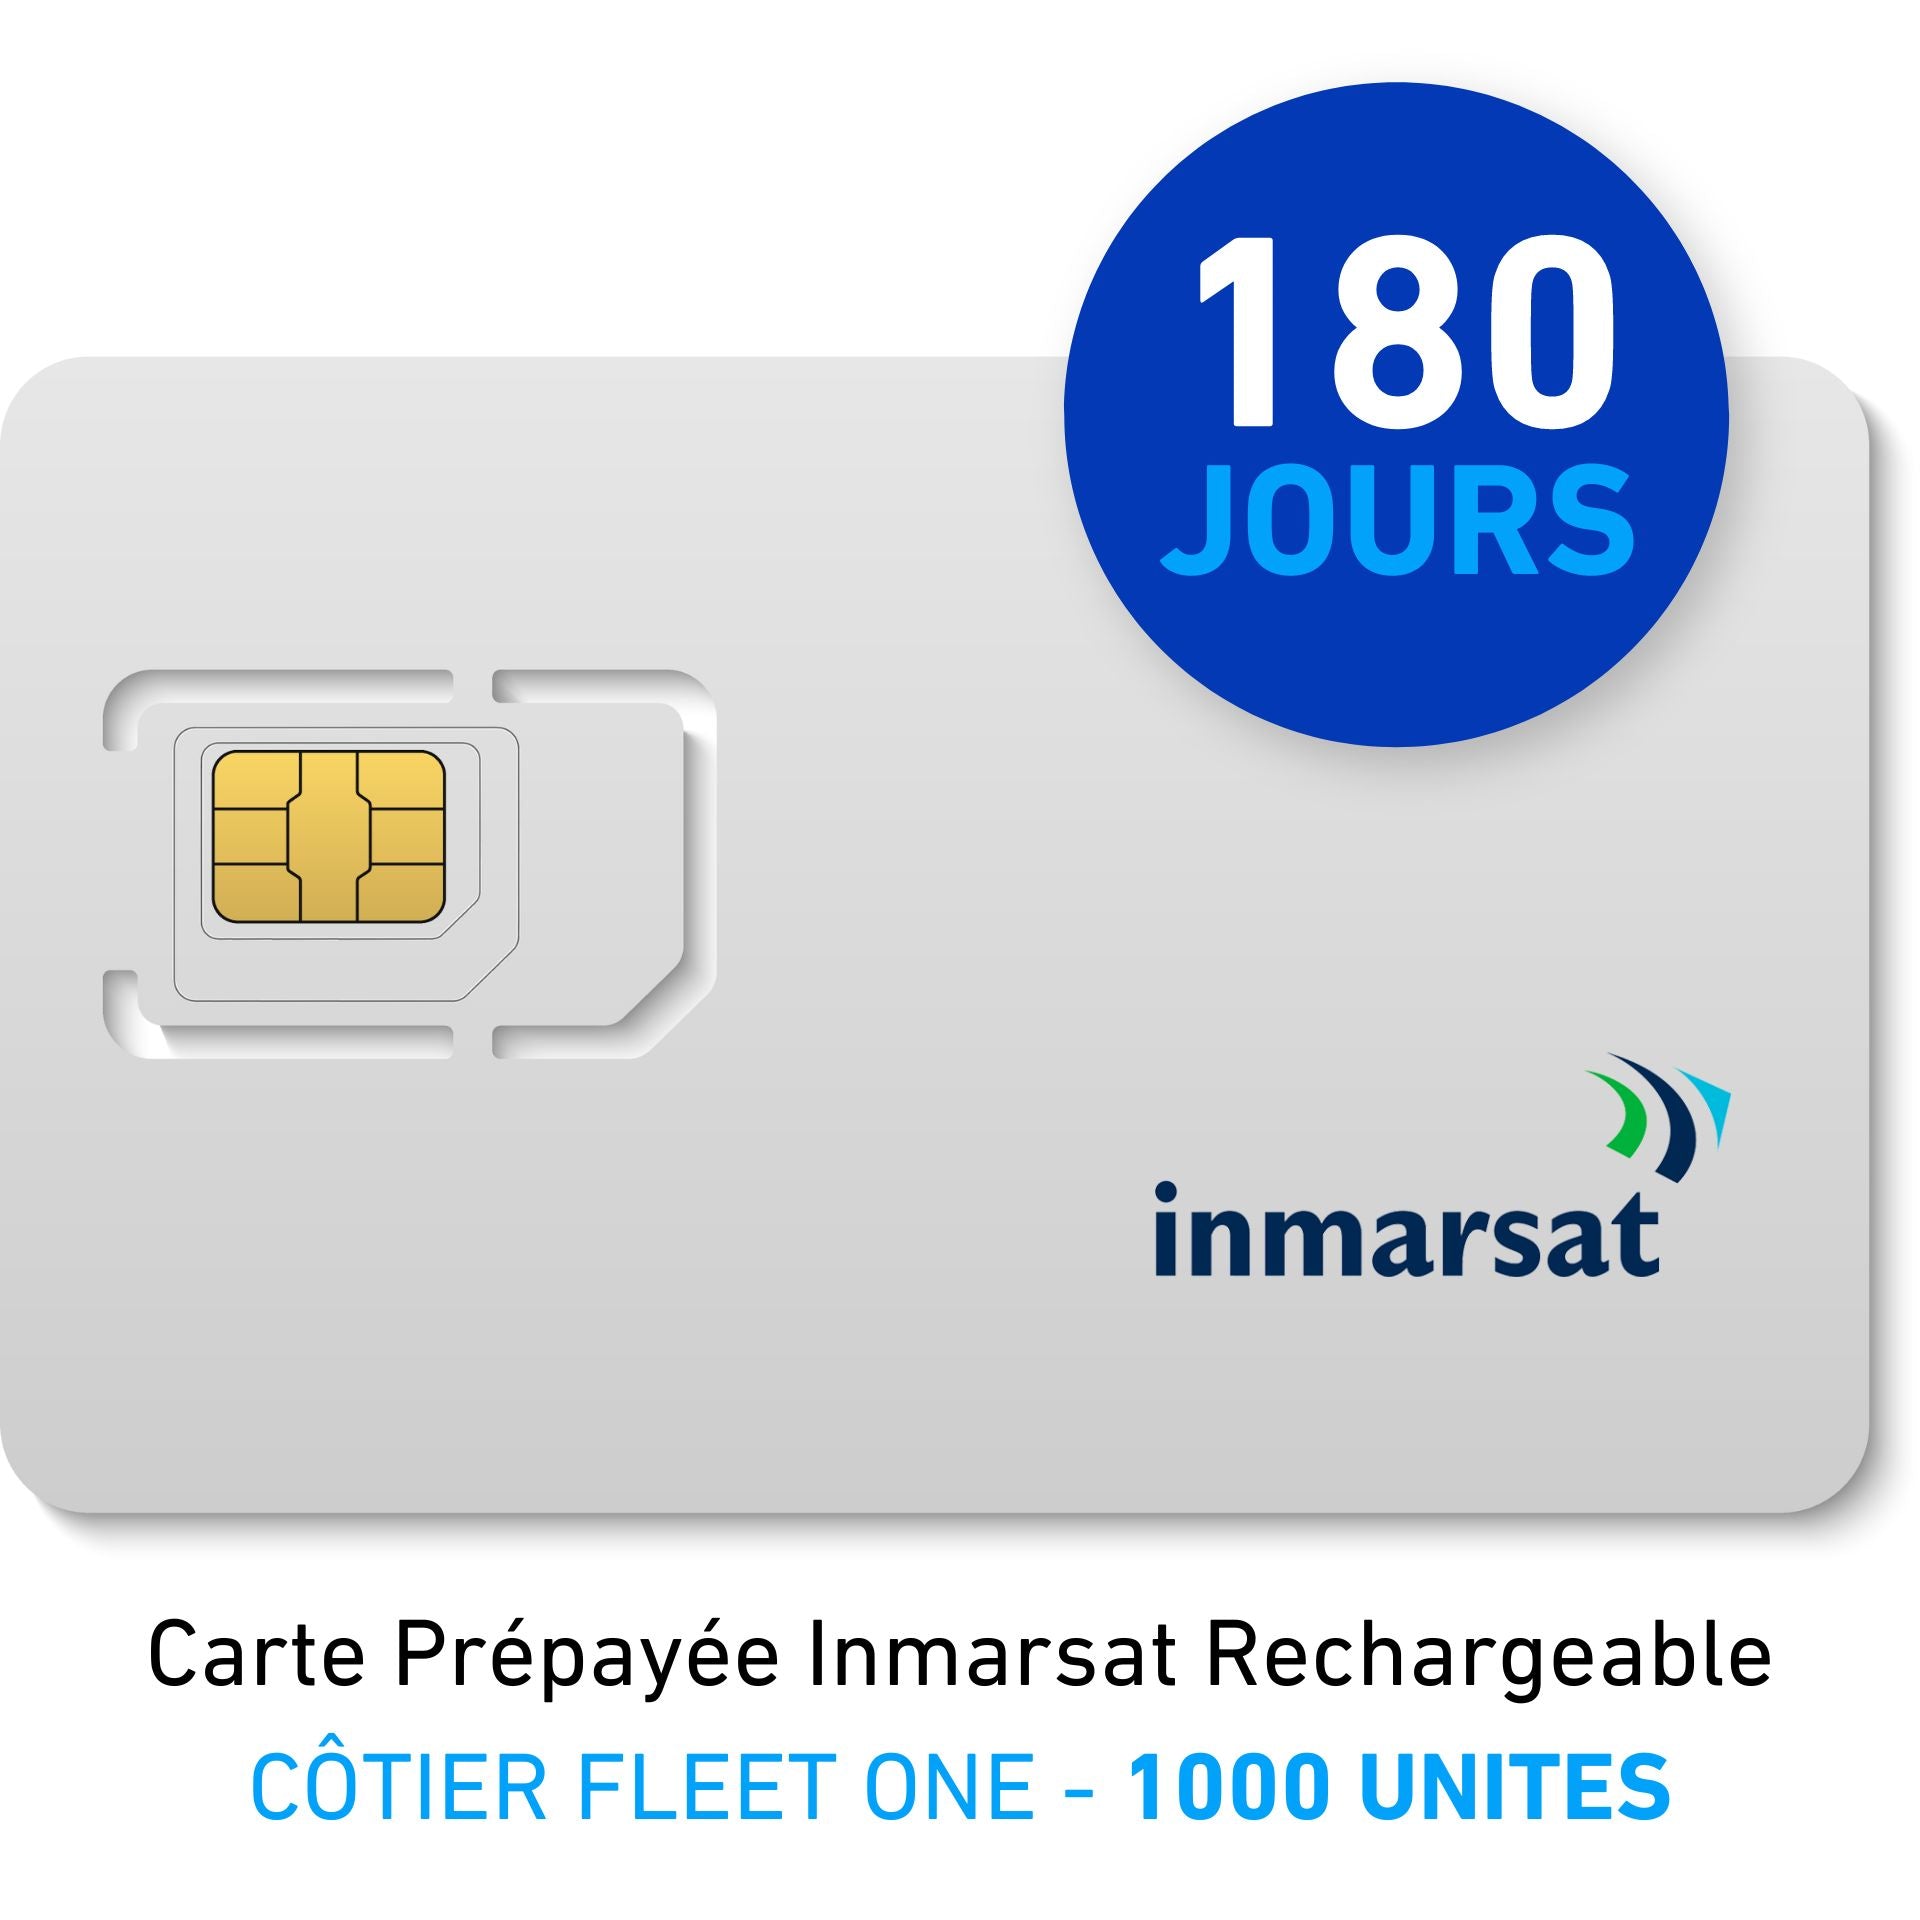 Carte Prépayée INMARSAT Rechargeable CÔTIER FLEET ONE - 1000 UNITES - 180 JOURS